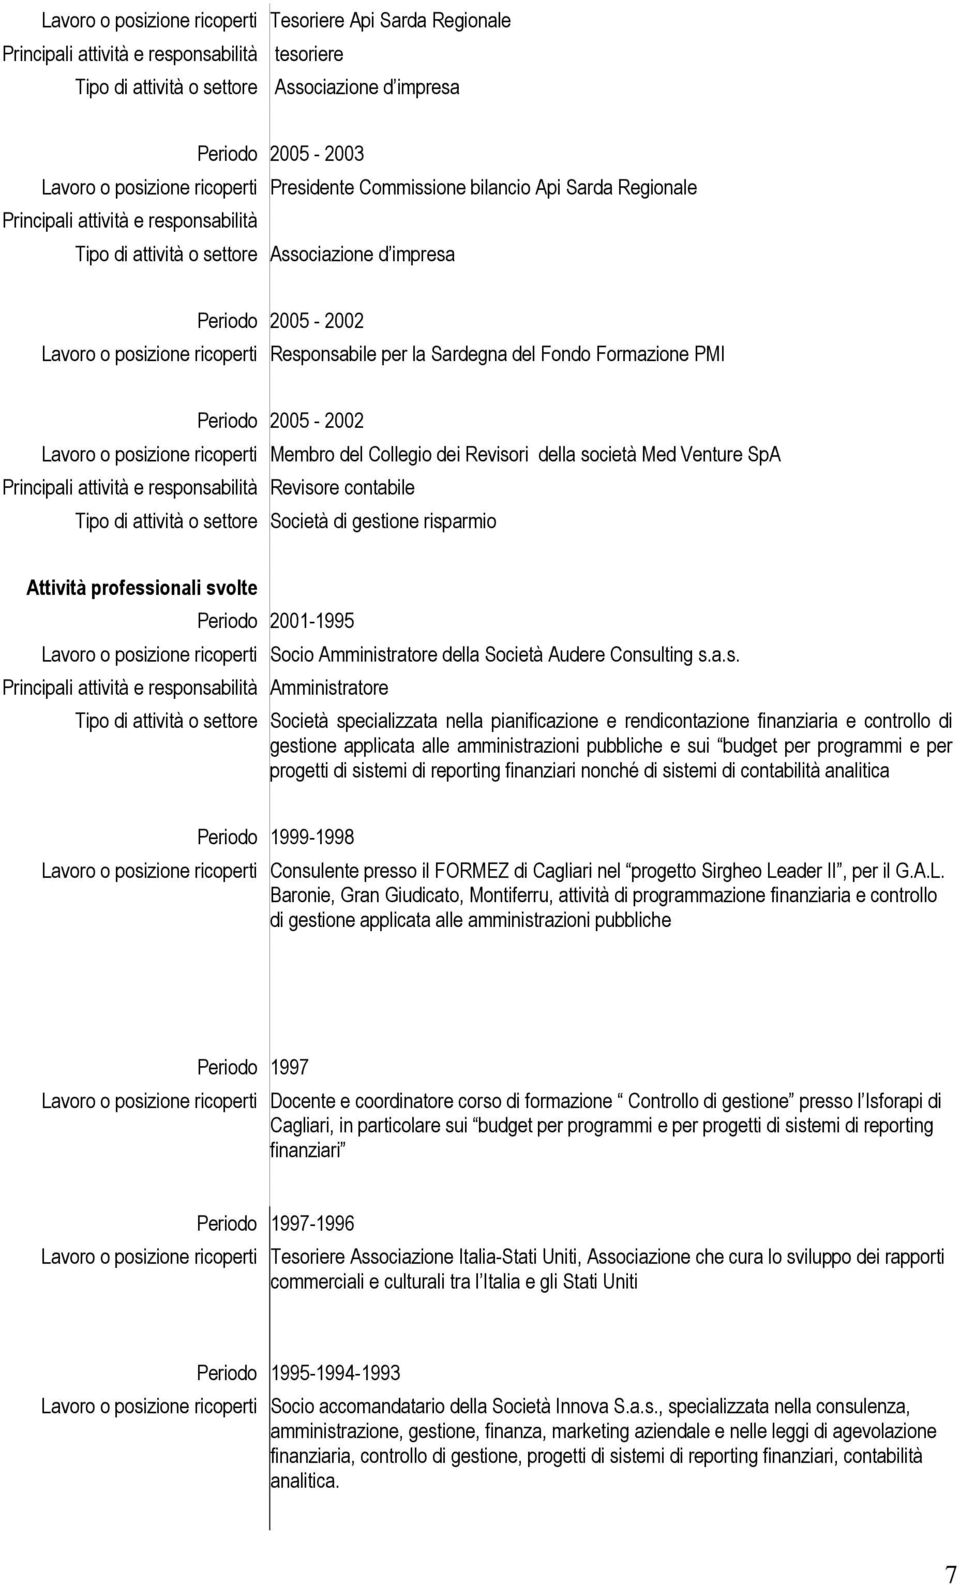 Responsabile per la Sardegna del Fondo Formazione PMI Periodo 2005-2002 Lavoro o posizione ricoperti Membro del Collegio dei Revisori della società Med Venture SpA Tipo di attività o settore Società